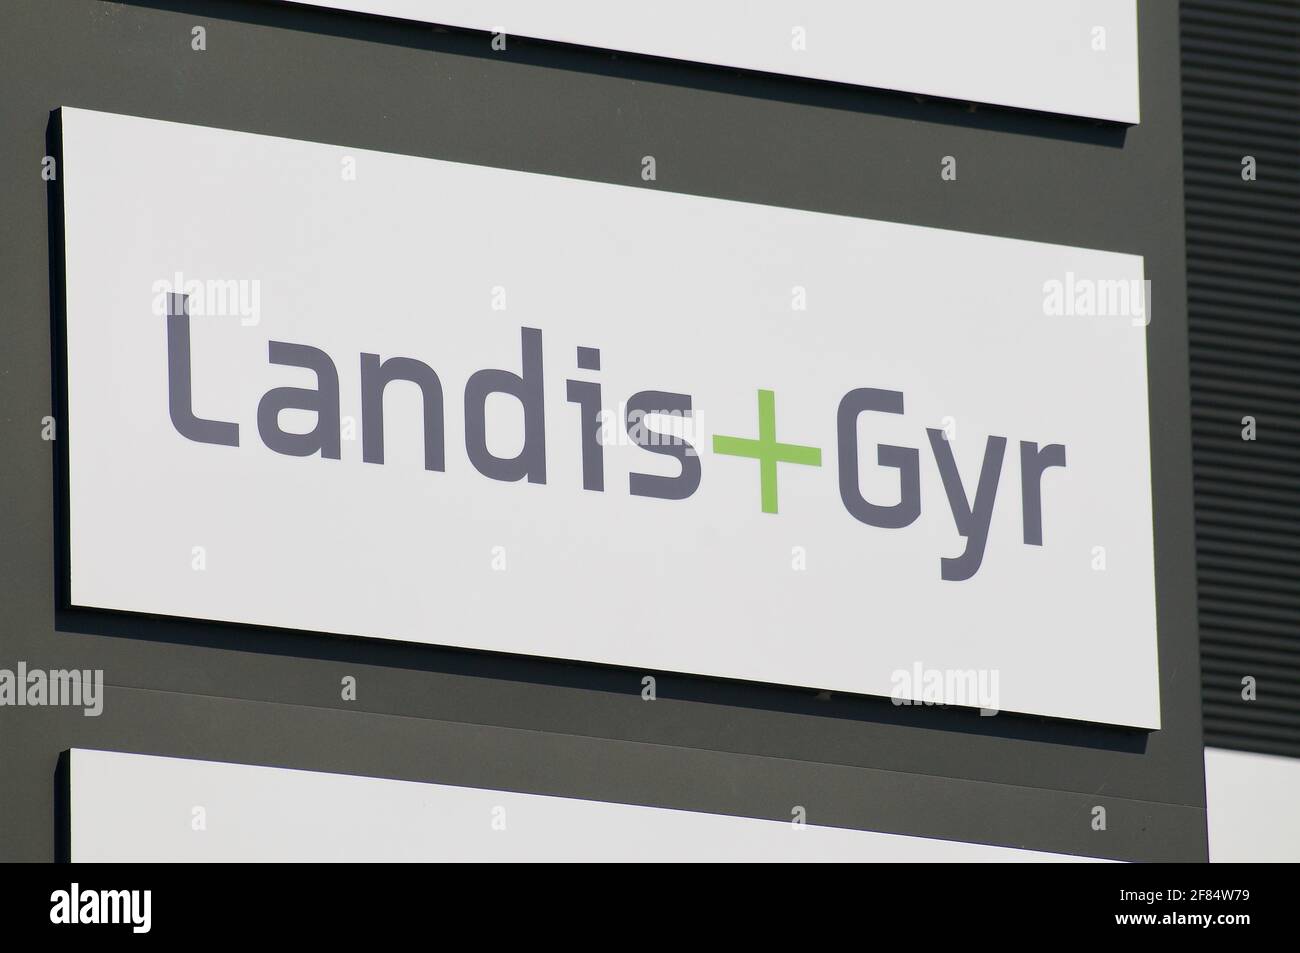 Zug, Suisse - 28 mars 2021 : signalisation Landis + Gyr suspendue devant le bâtiment du siège de Zug. Landis + Gyr est une société cotée en bourse, Banque D'Images